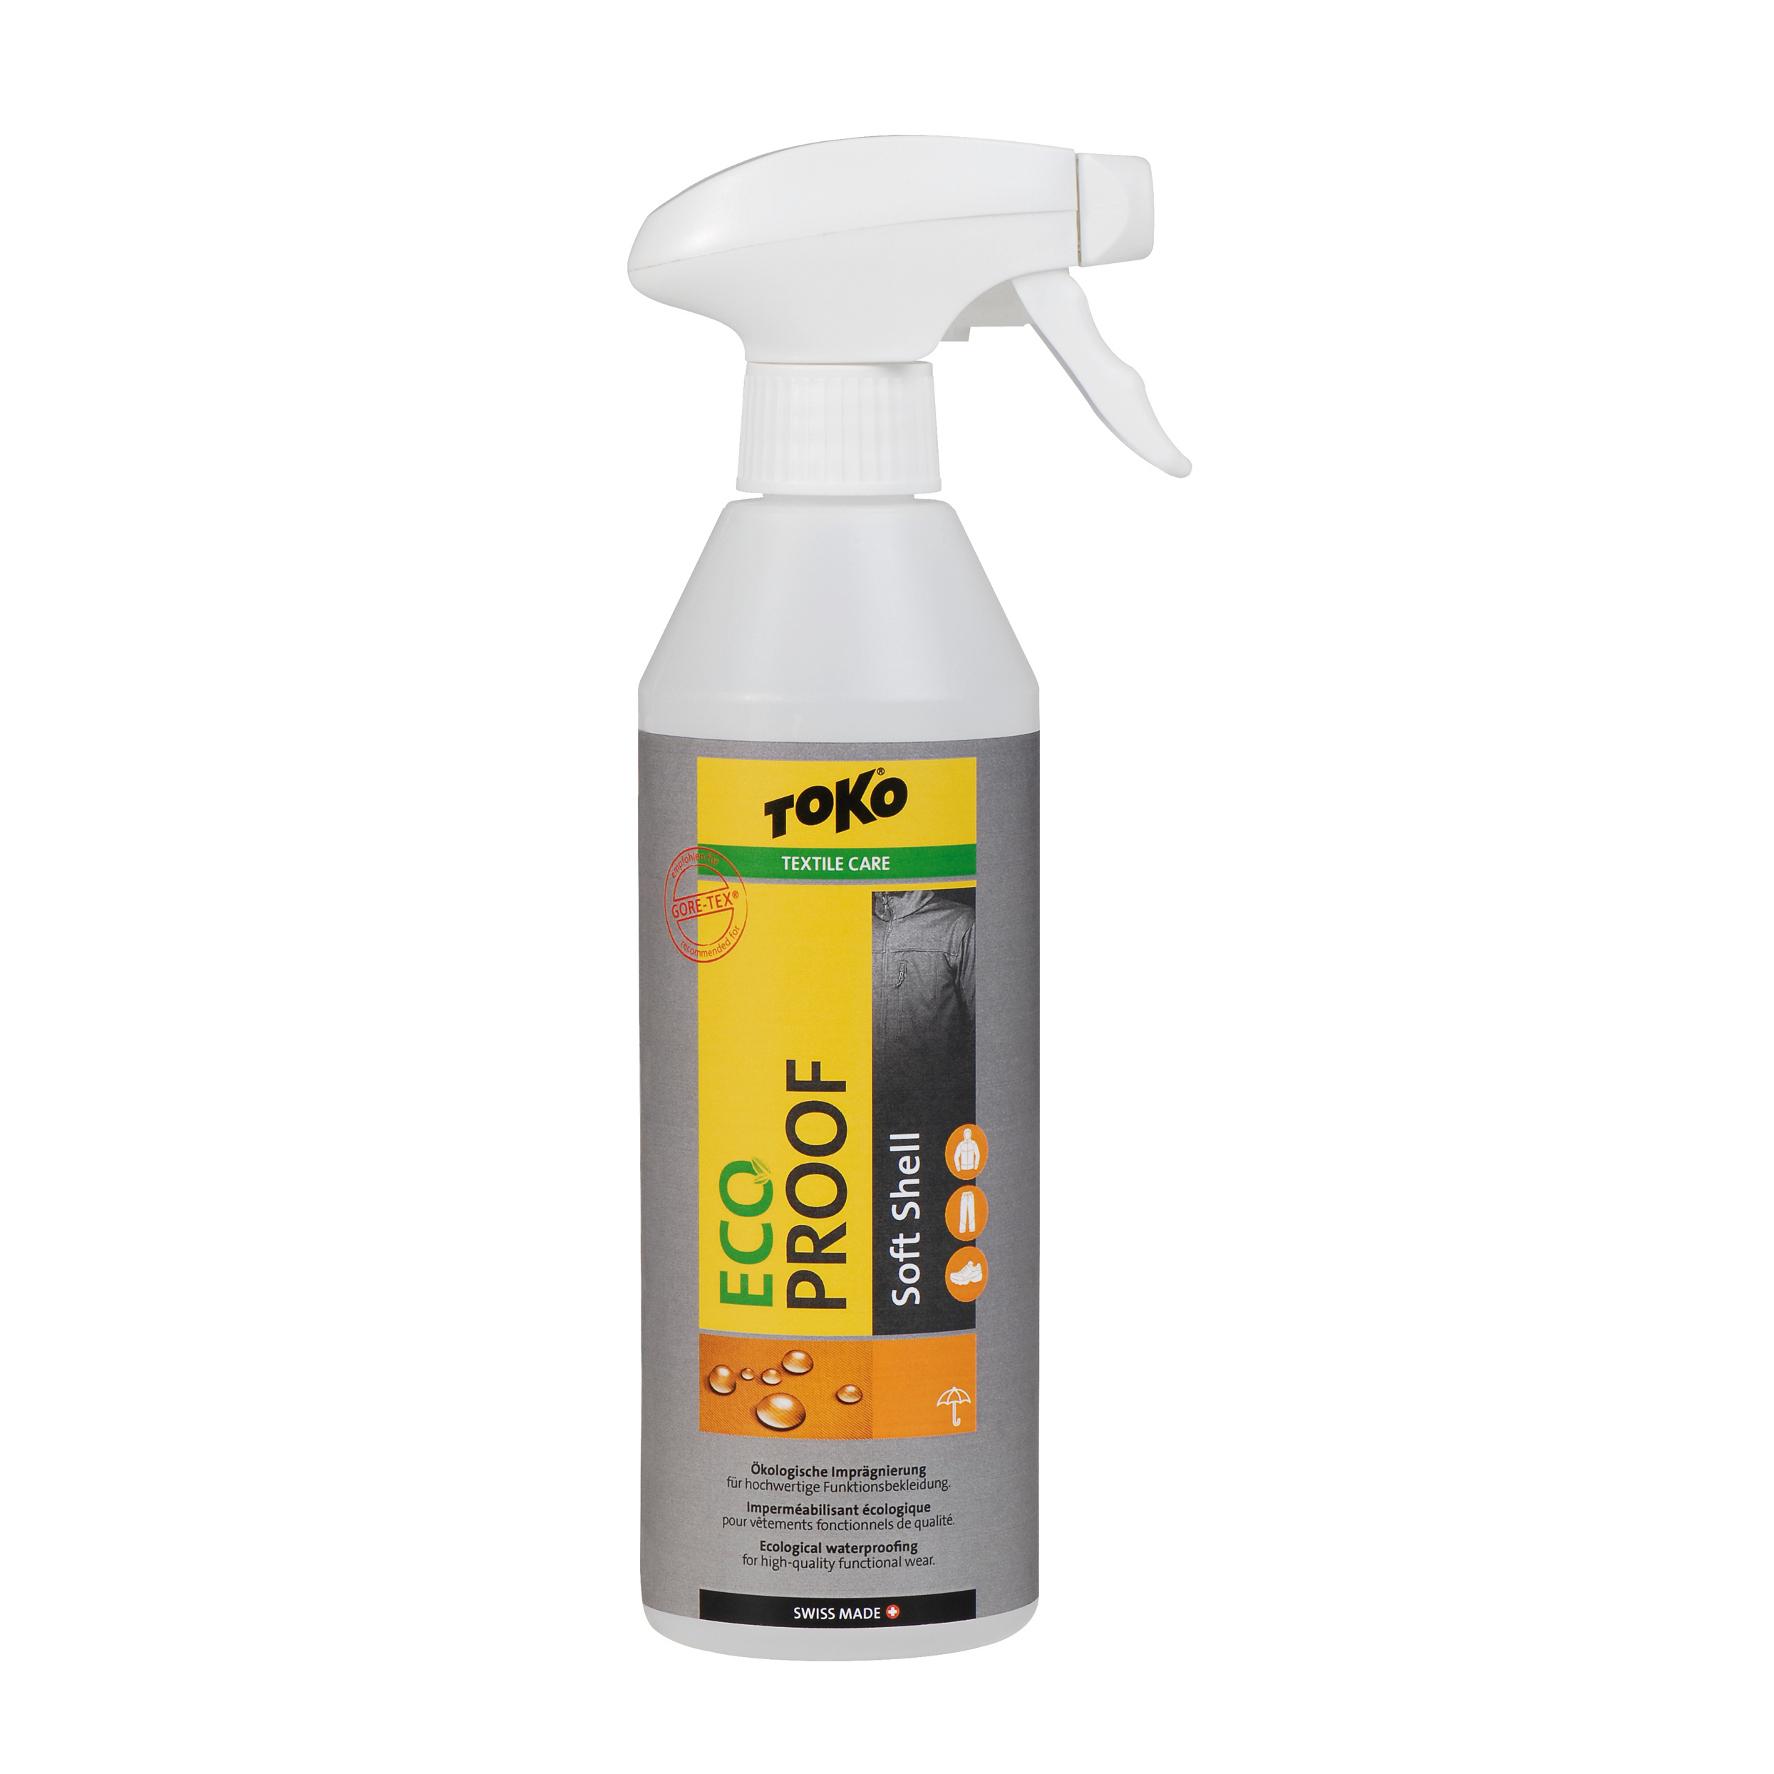 Foto Toko Eco Soft Shell Proof Productos de cuidado y limpieza 500 ml foto 251773